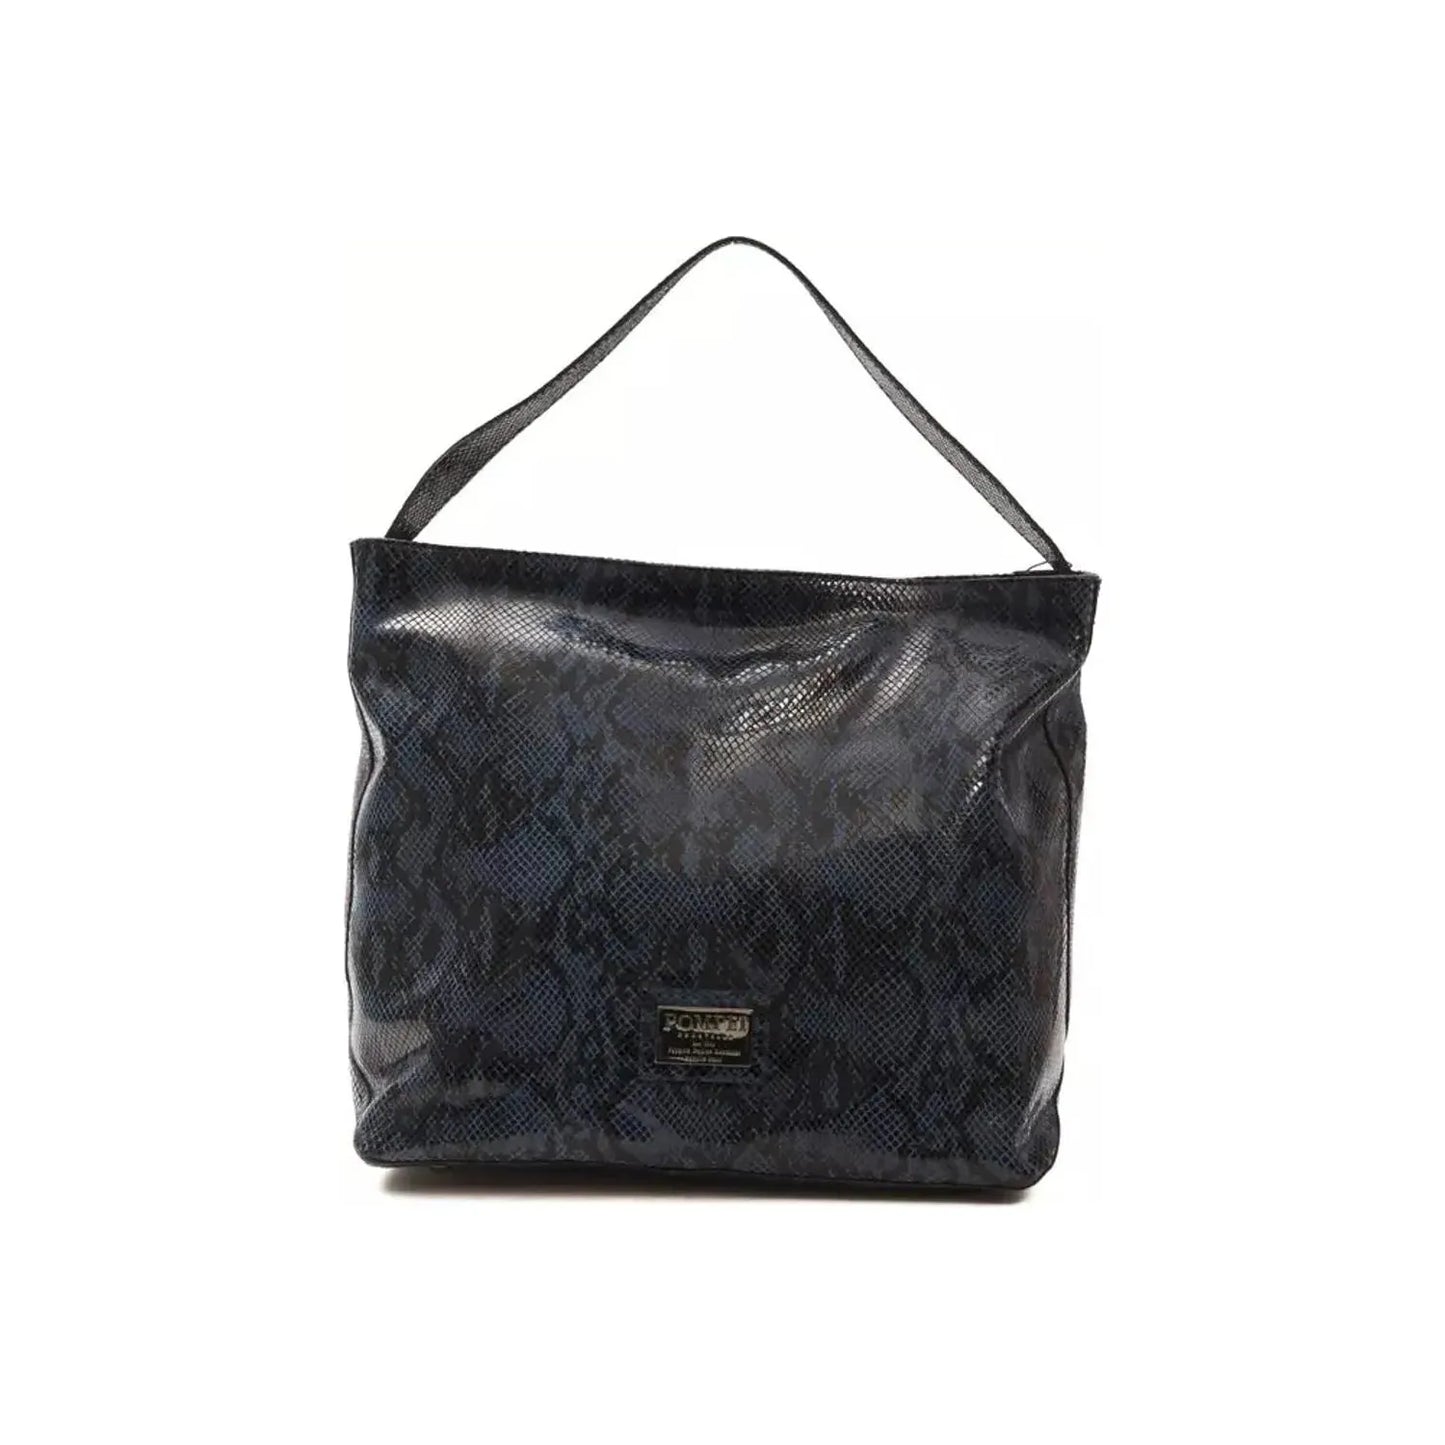 Pompei Donatella Elegant Blue Python Print Leather Shoulder Bag WOMAN SHOULDER BAGS blue-leather-shoulder-bag stock_product_image_5786_1580392094-26-5cb72725-7fc.webp